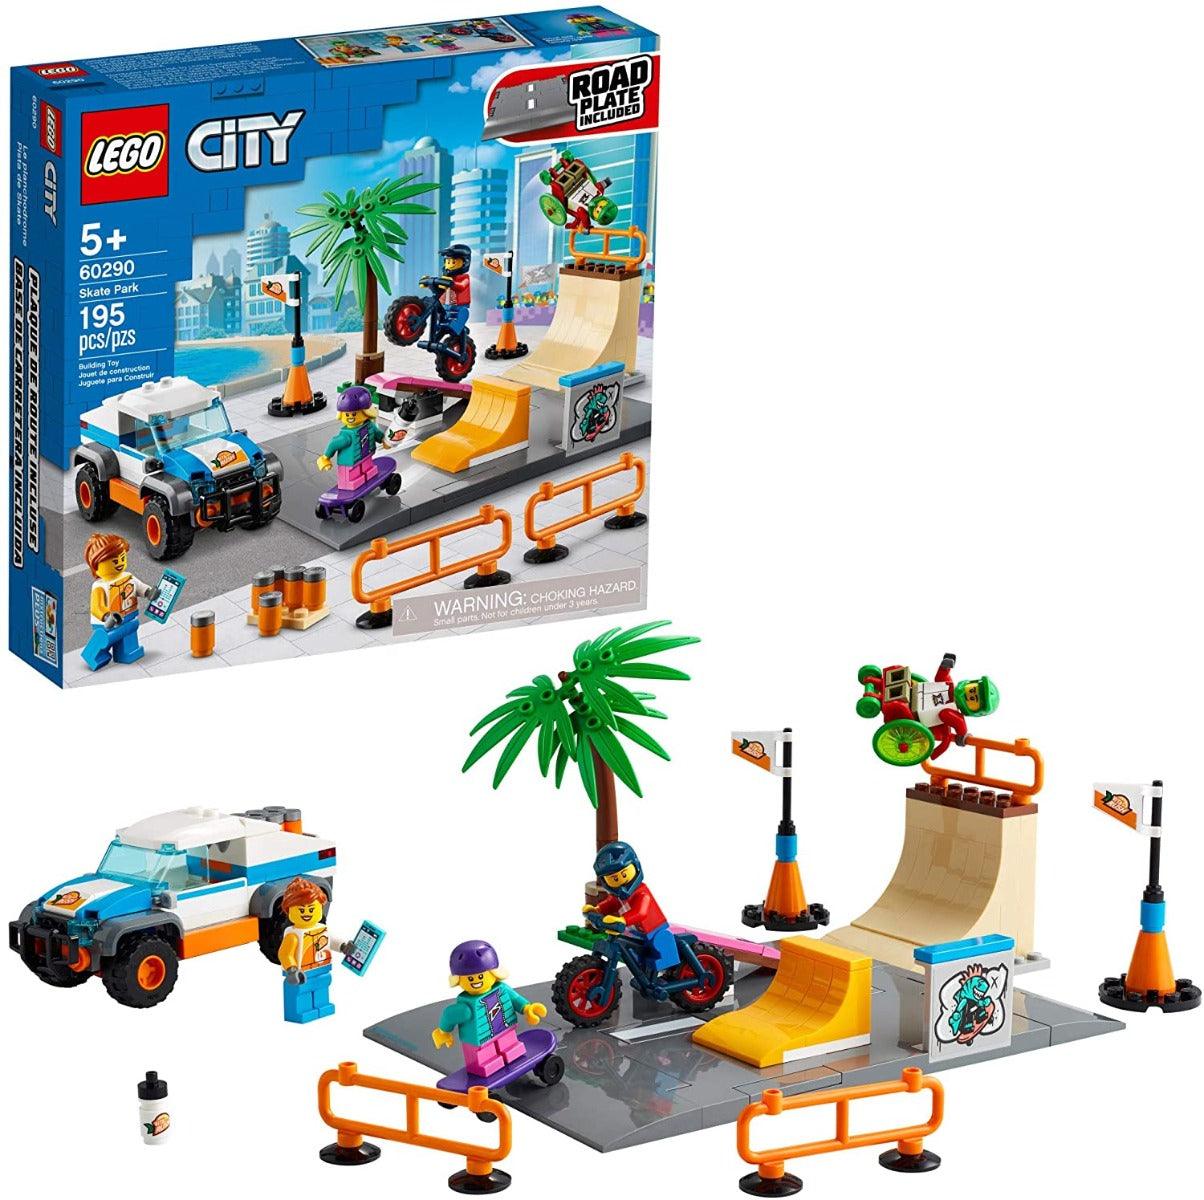 LEGO City Skate Park